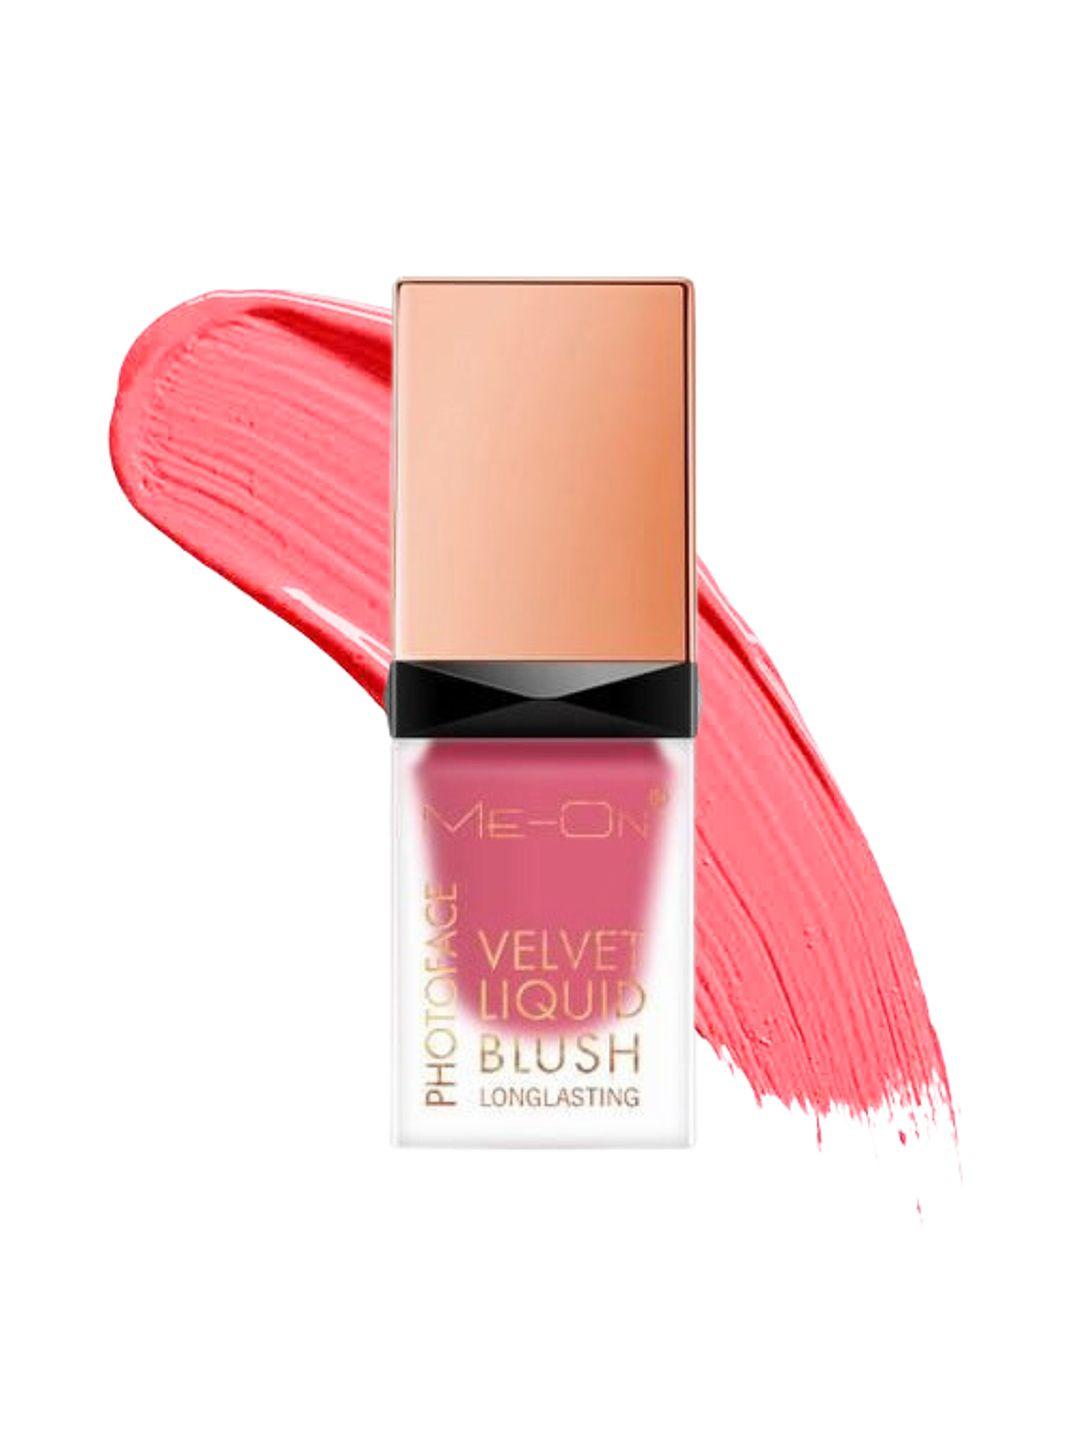 me-on photoface liquid velvet blush - 15gm soft pink 01